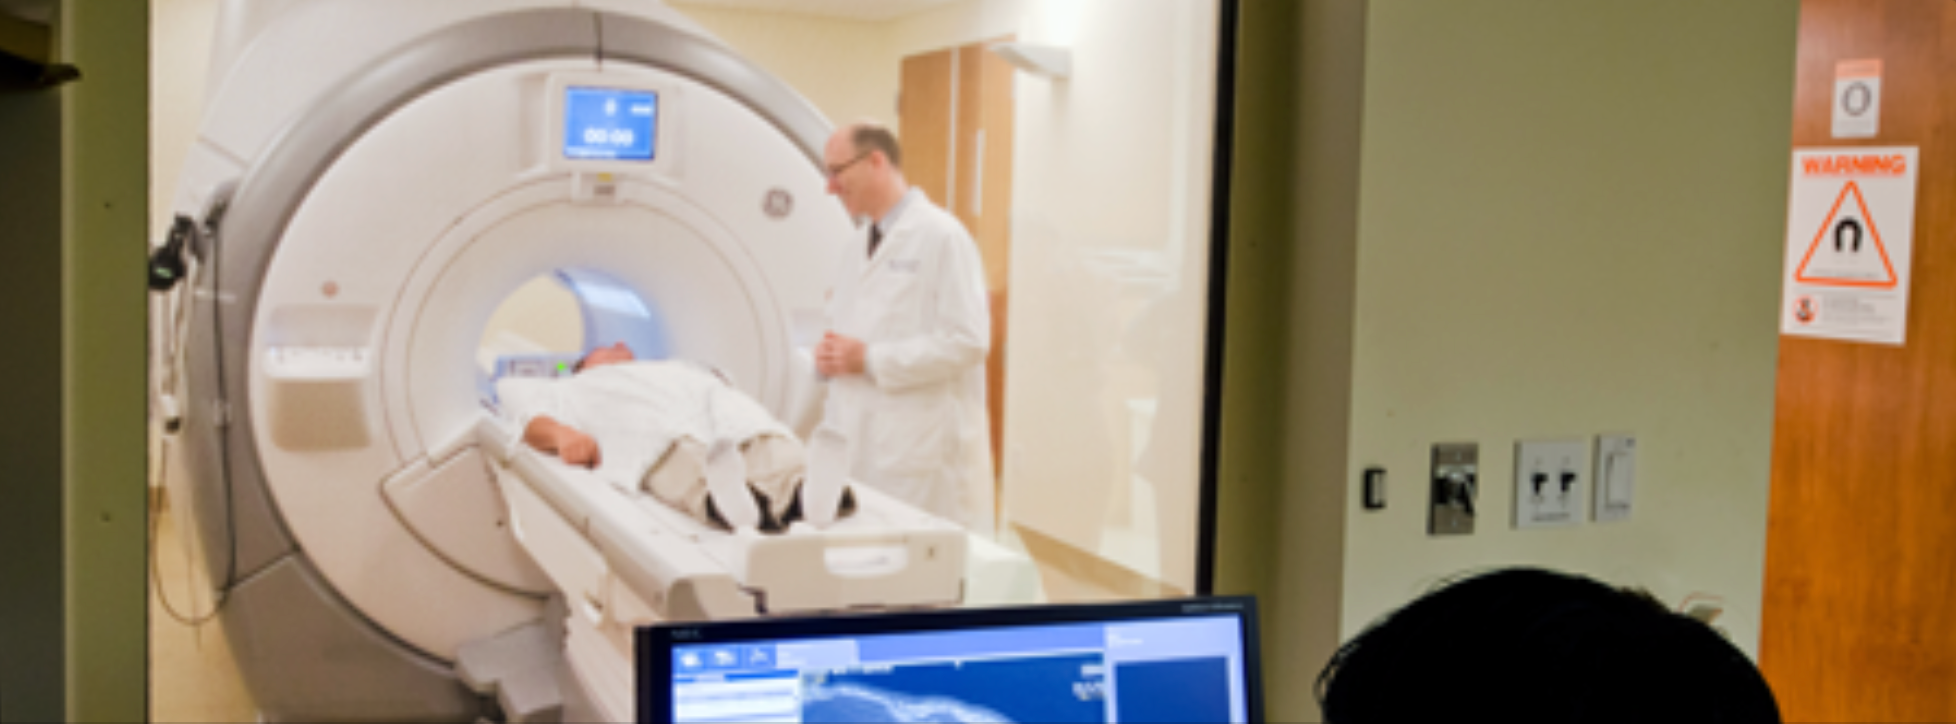 Review casts doubt over MRI license at Kalgoorlie Regional Hospital